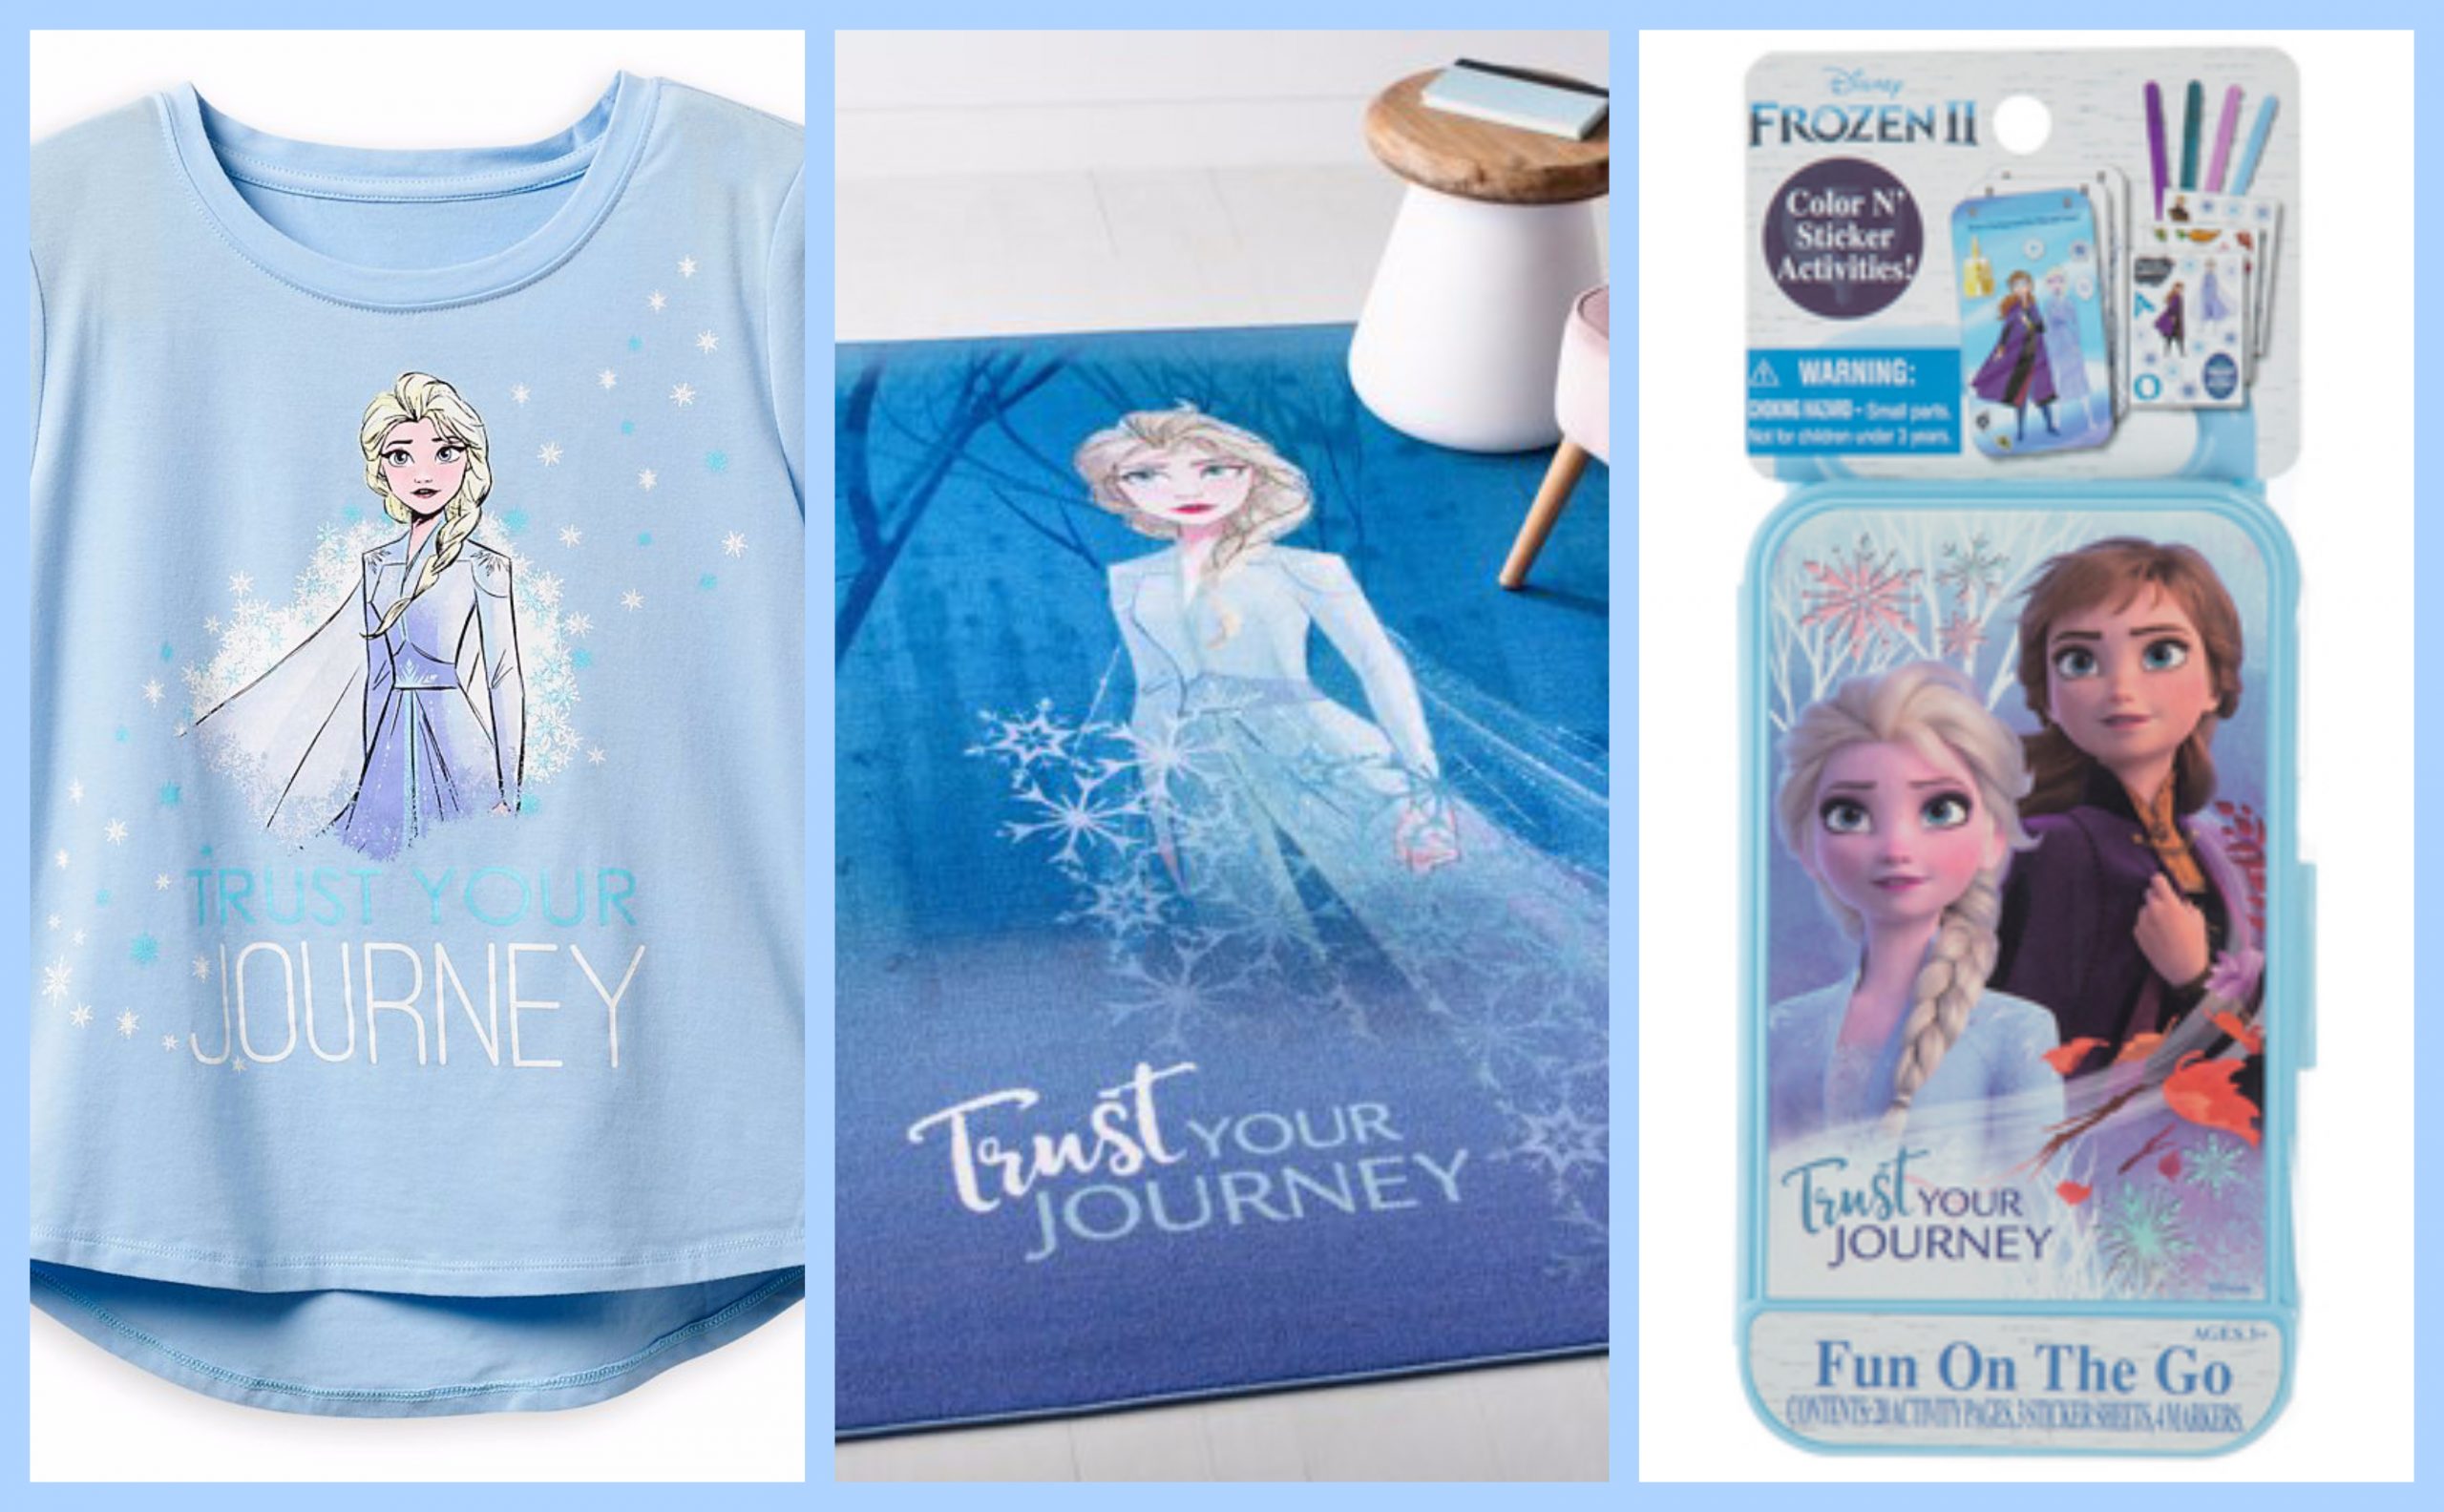 Disney Facing Lawsuit Over ‘Frozen II’ Merchandise Slogan